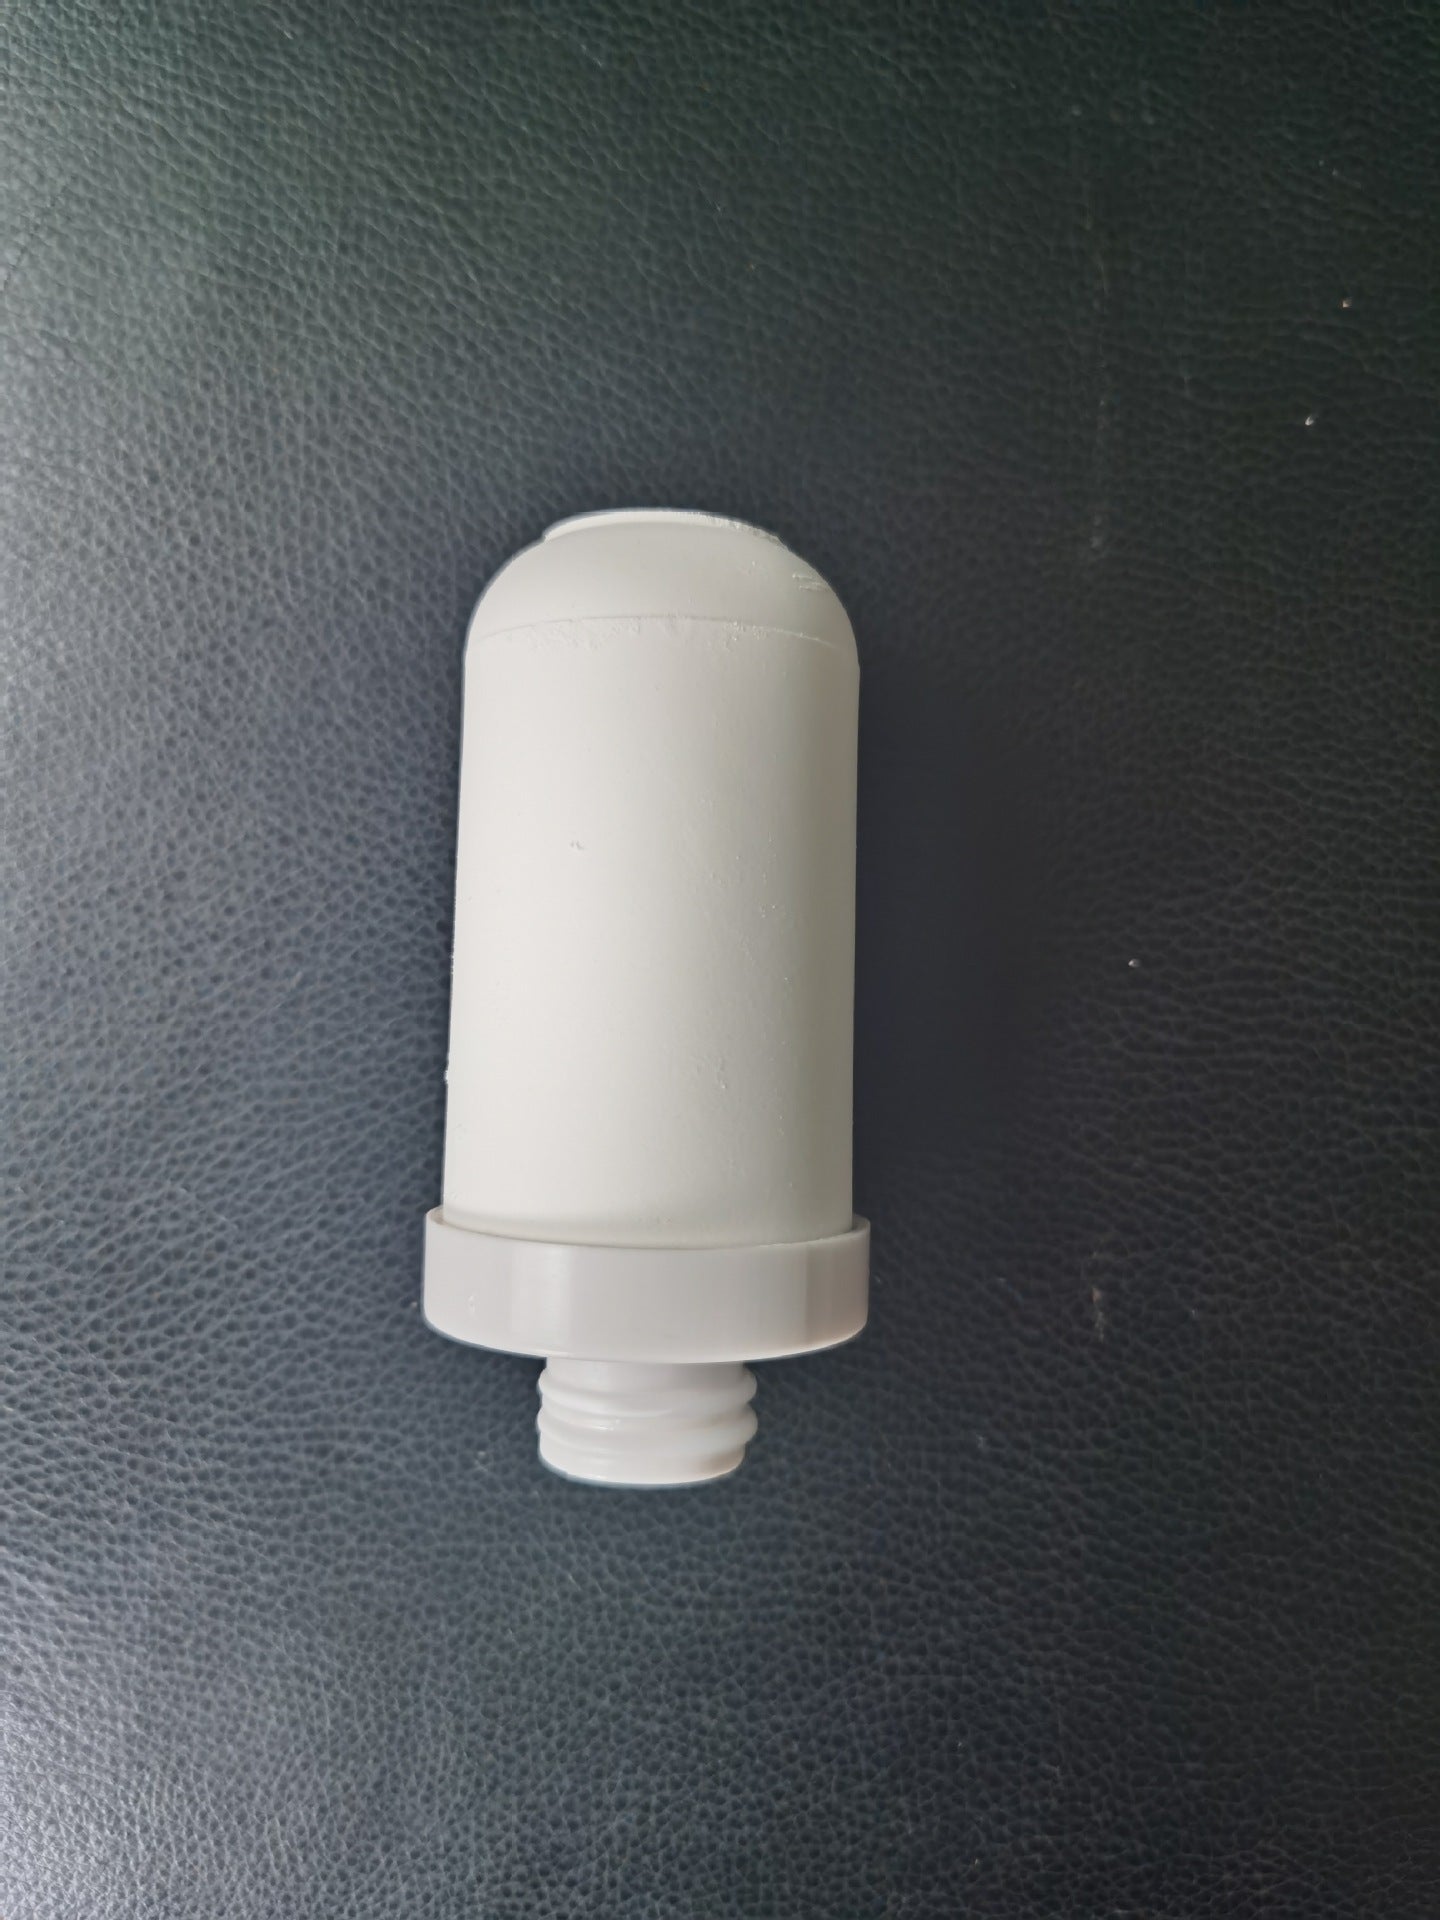  Kitchen Water Purifier Faucet Filter cashymart